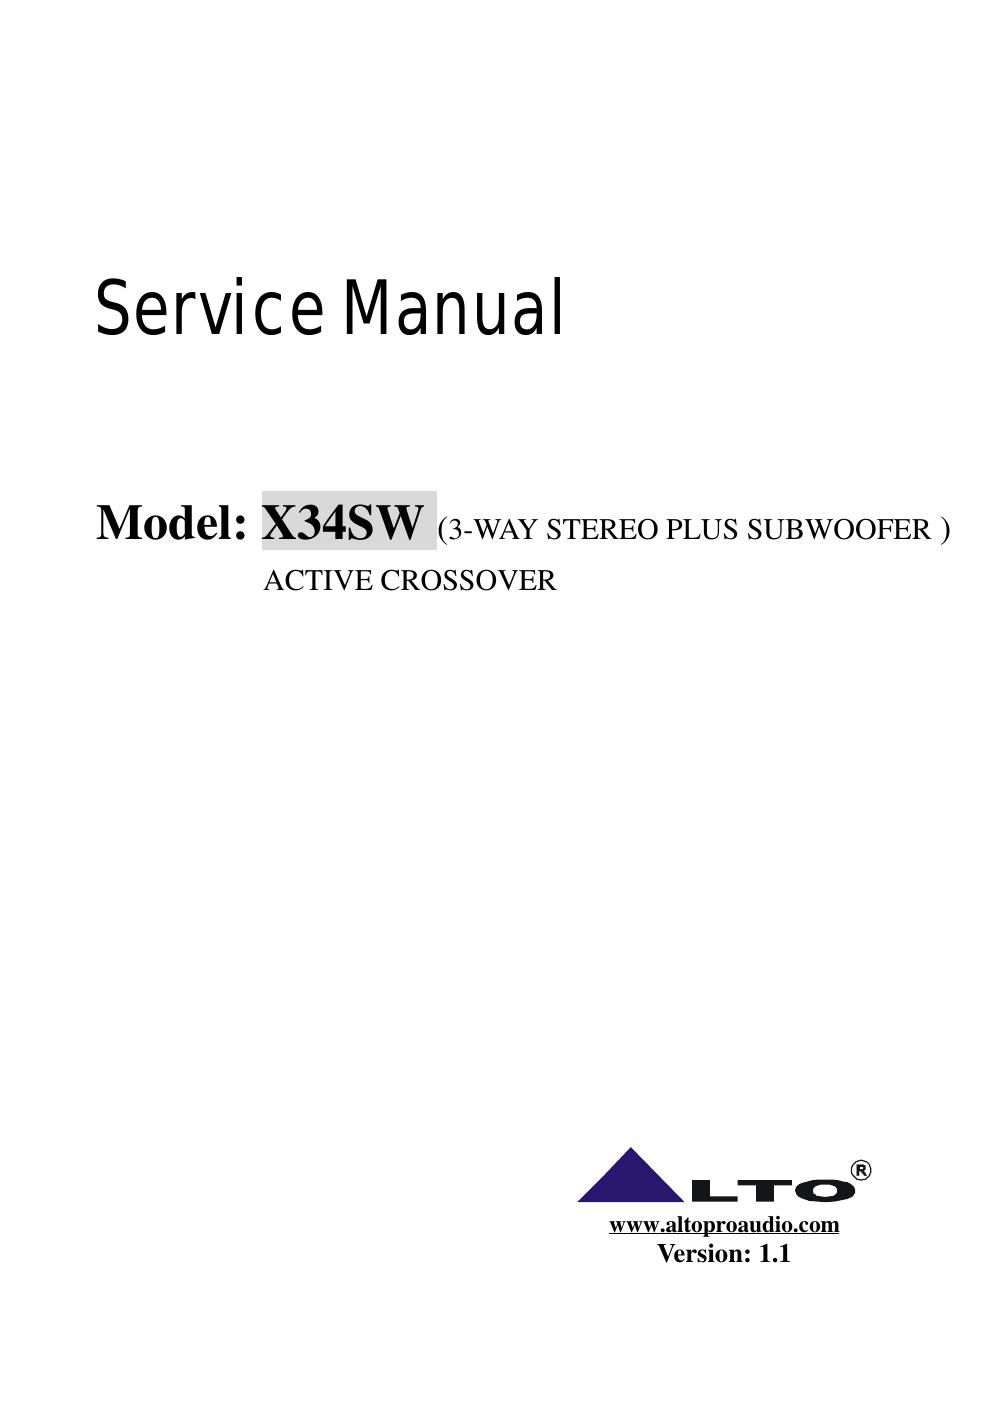 alto x 34sw active crossover service manual